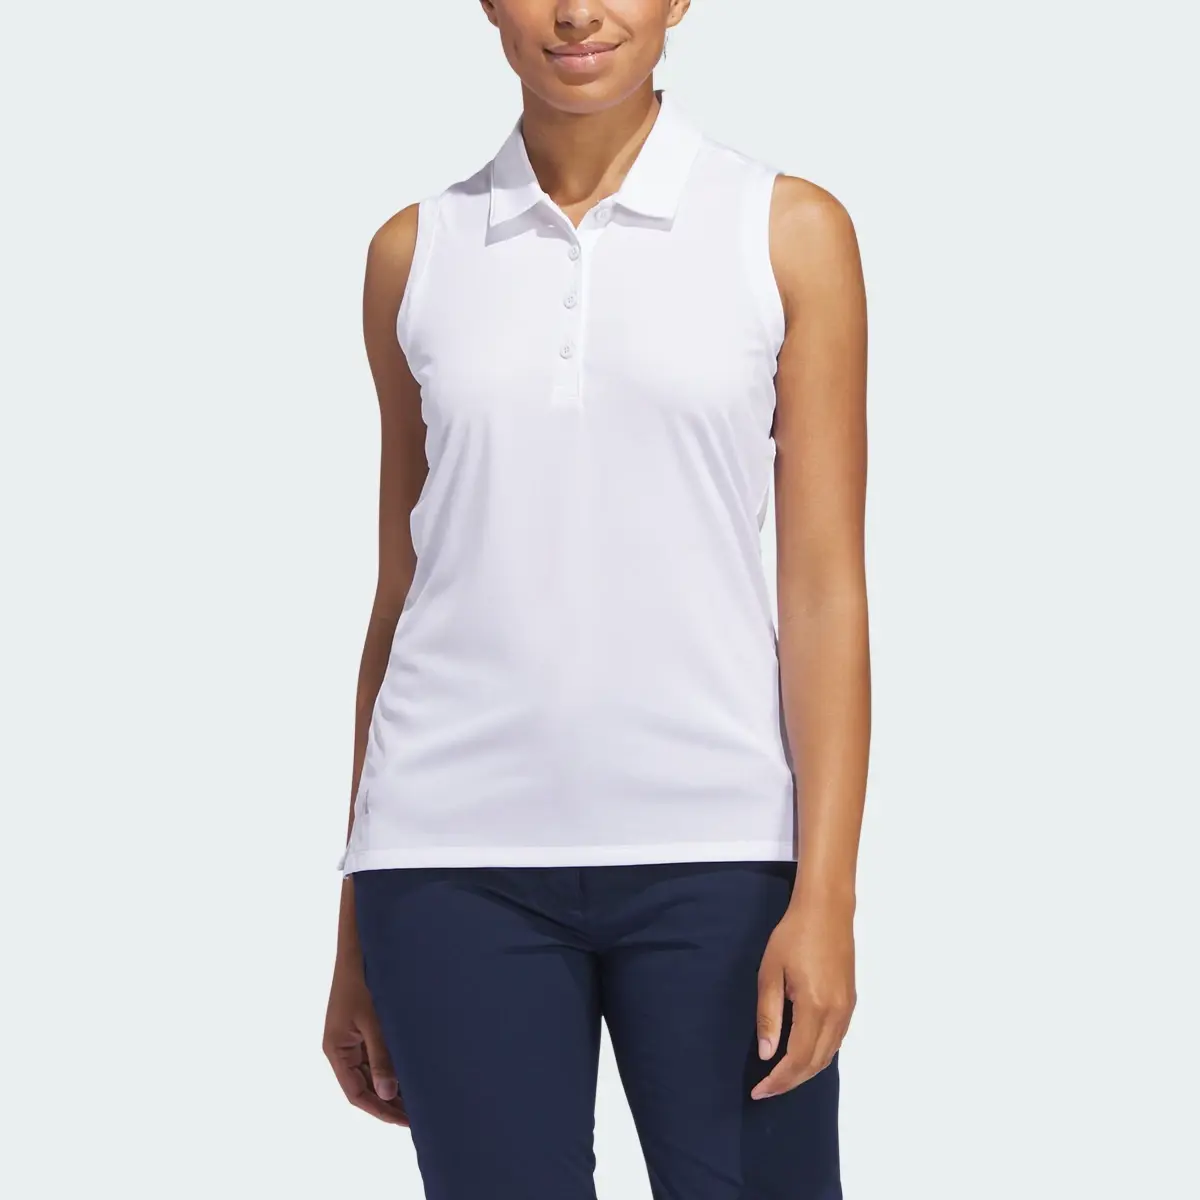 Adidas Koszulka Women's Ultimate365 Solid Sleeveless Polo. 1